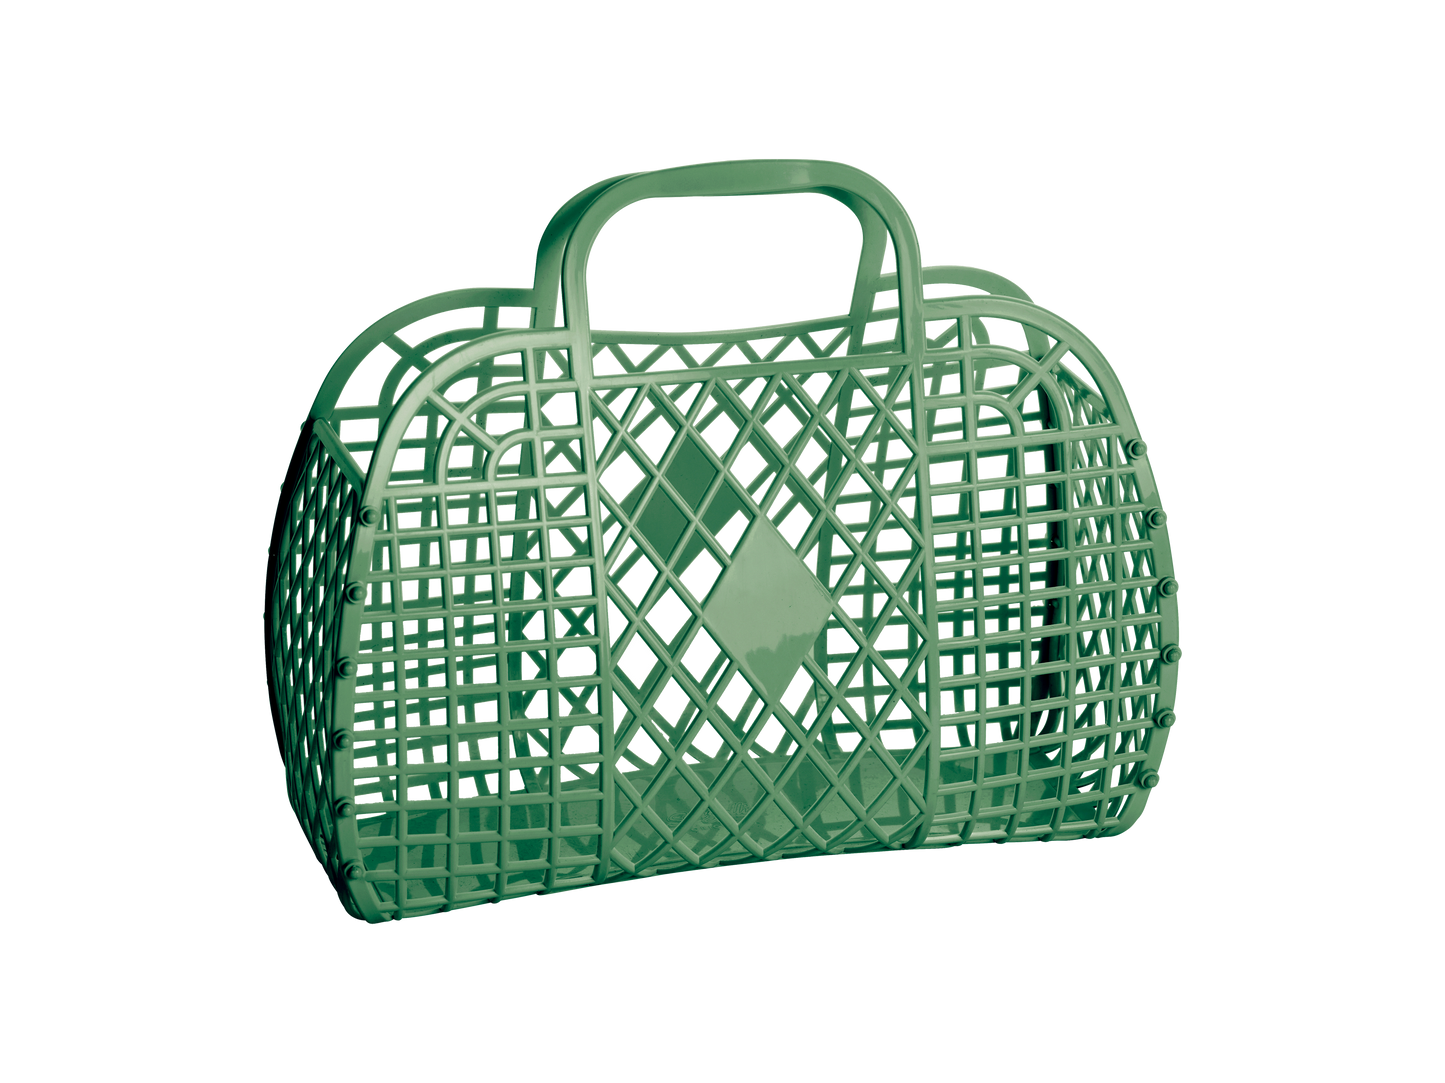 Retro Basket -  Large - Jelly Shopping Bag